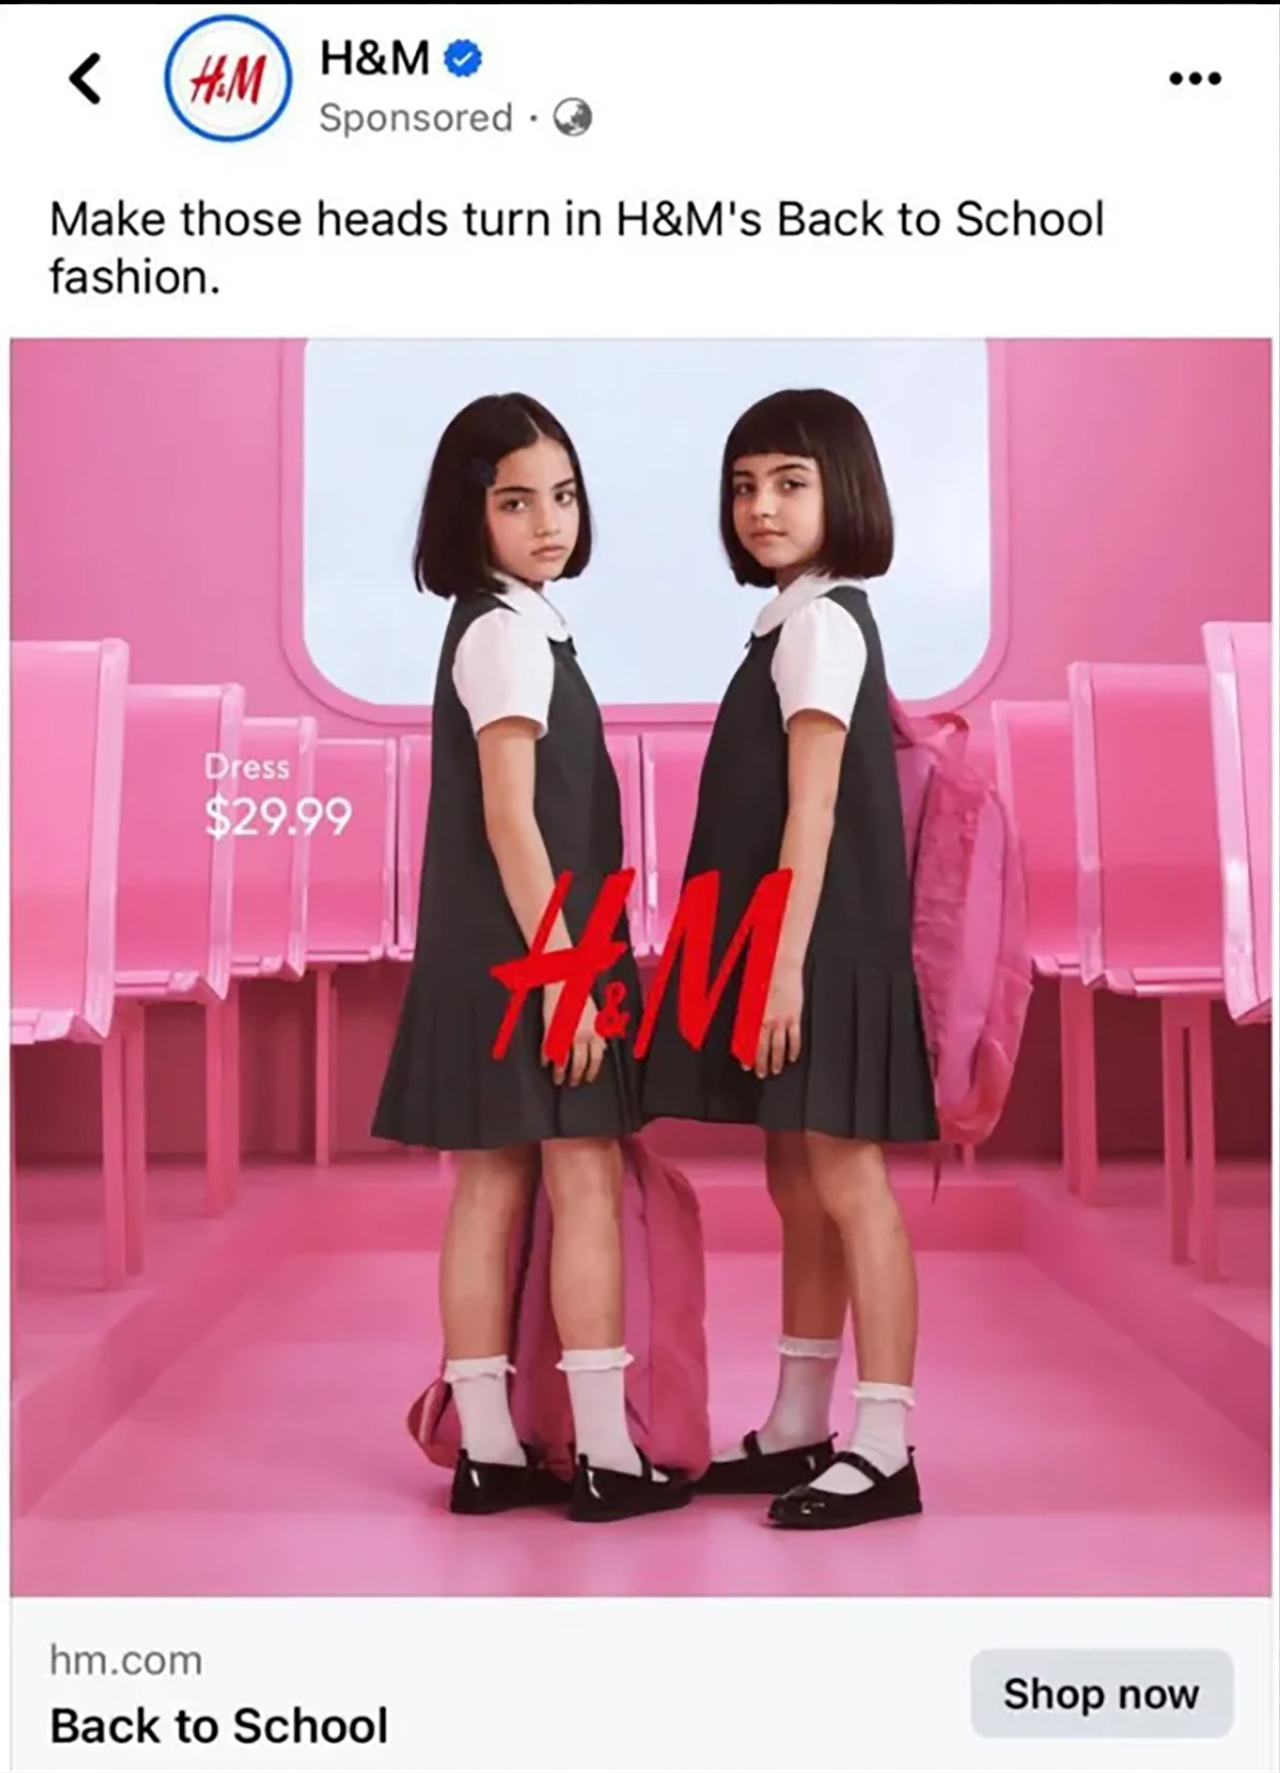 广告遭指“性化儿童” H&M下架 道歉！